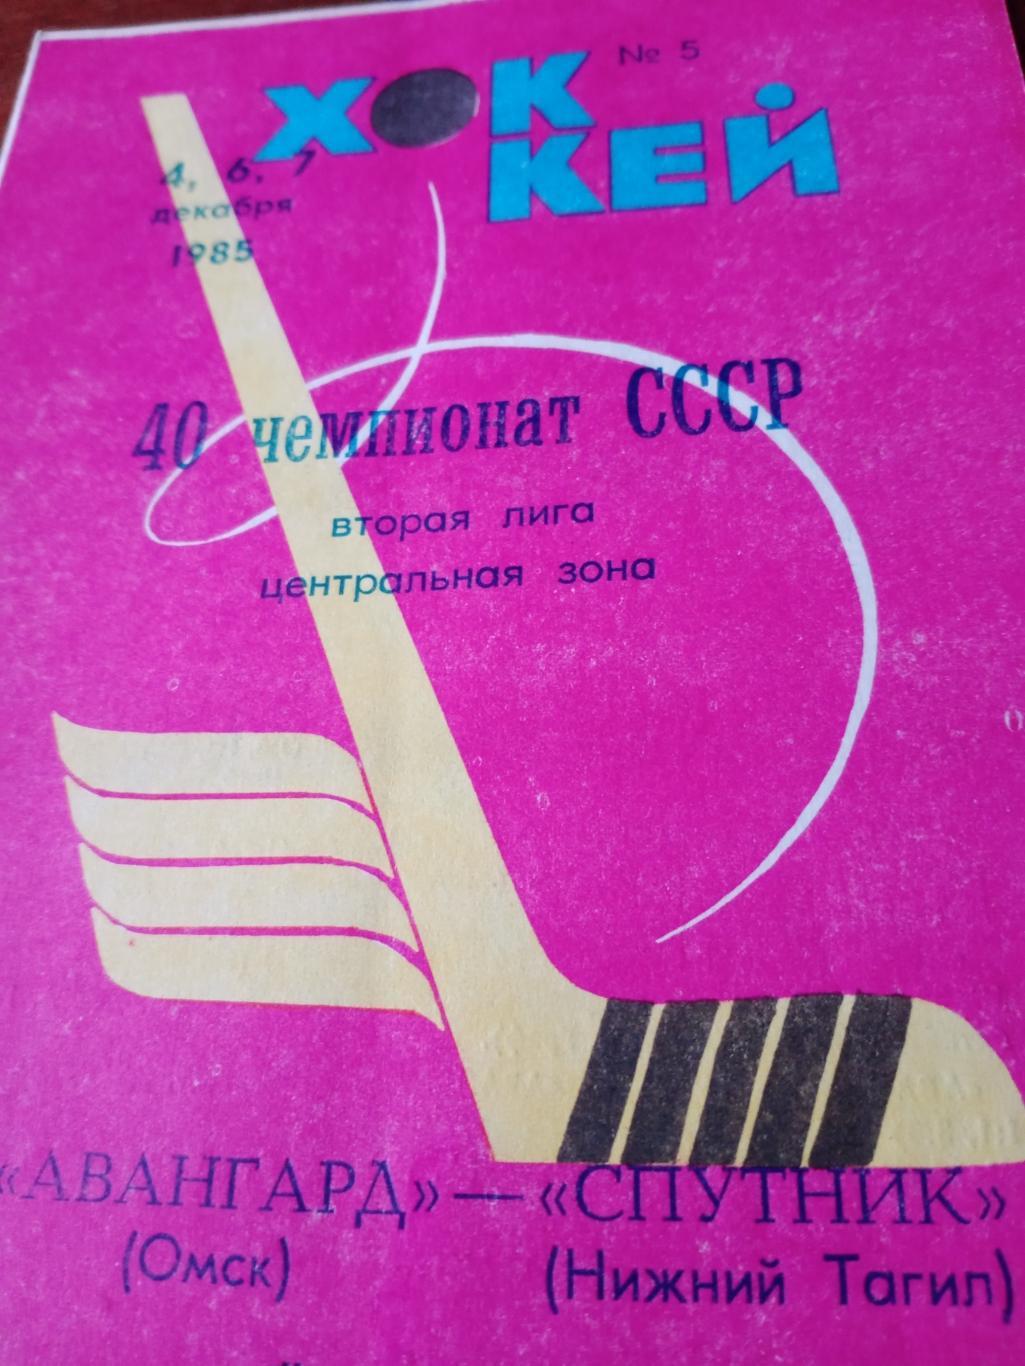 Авангард Омск - Спутник Нижний Тагил. 4, 6 и 7 декабря 1985 год